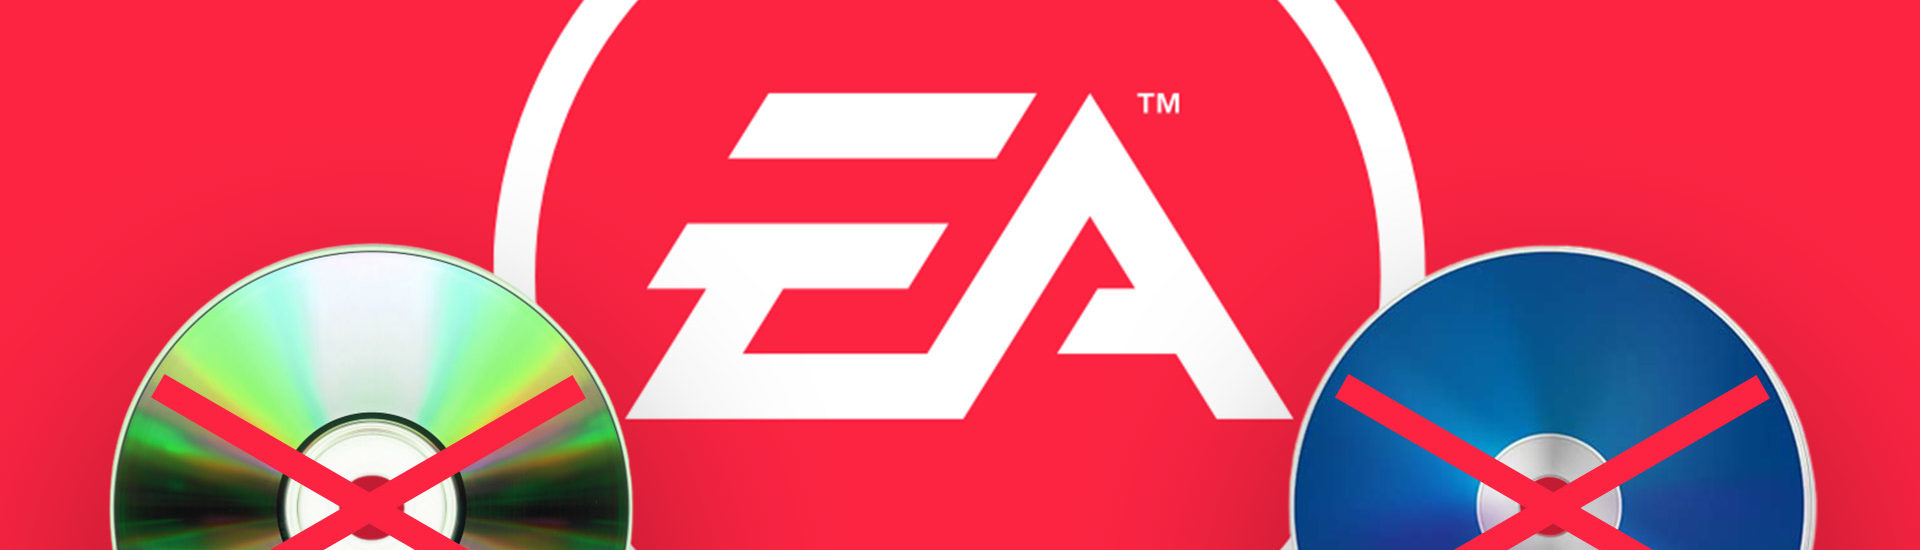 EA: Spiele bald nur noch digital in Deutschland erhältlich